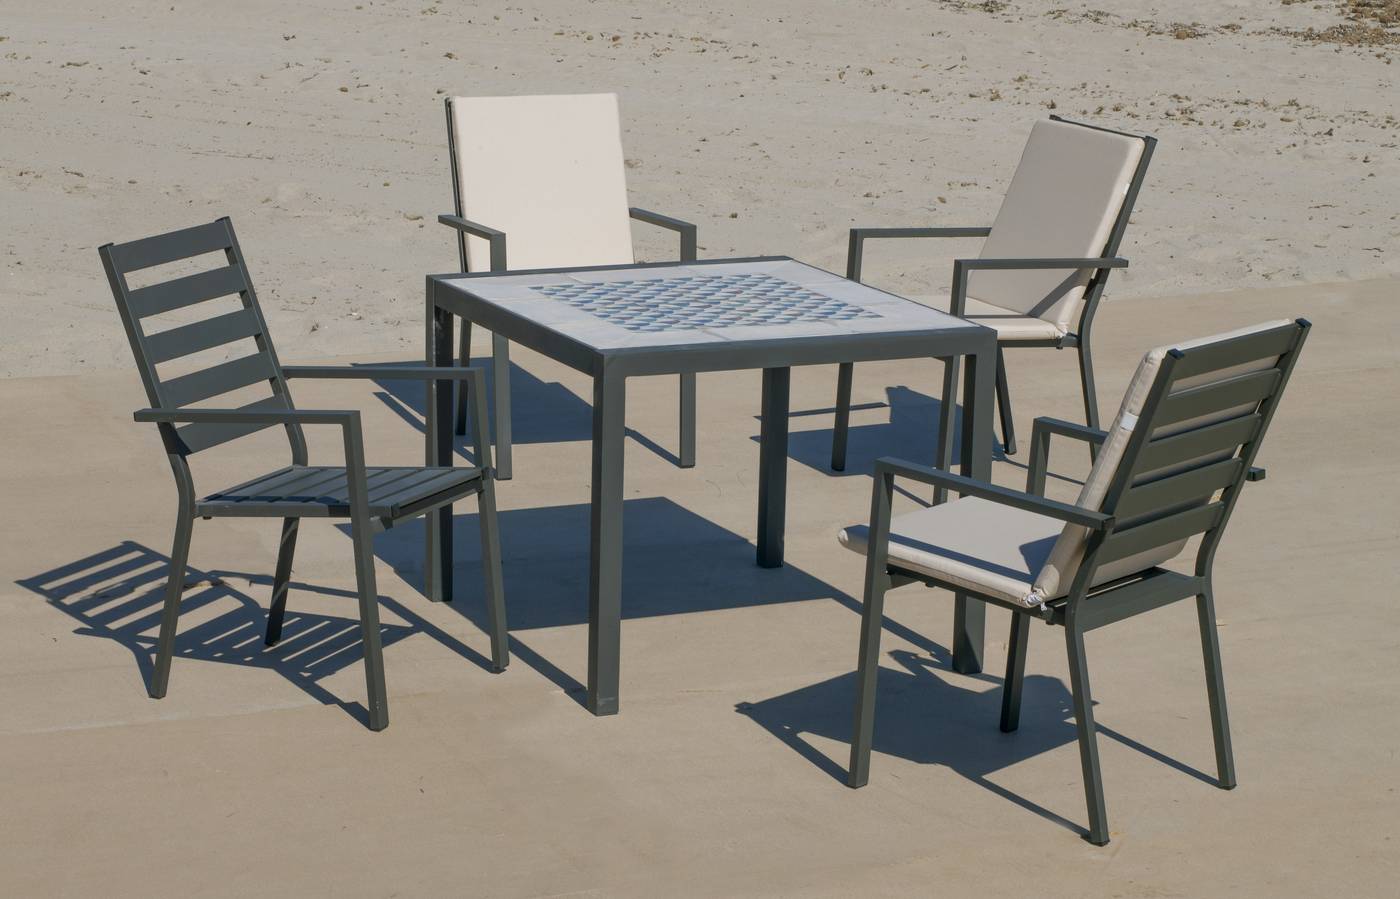 Conjunto de aluminio color antracita: Mesa cuadrada con tablero mosaico de 90 cm + 4 sillones.